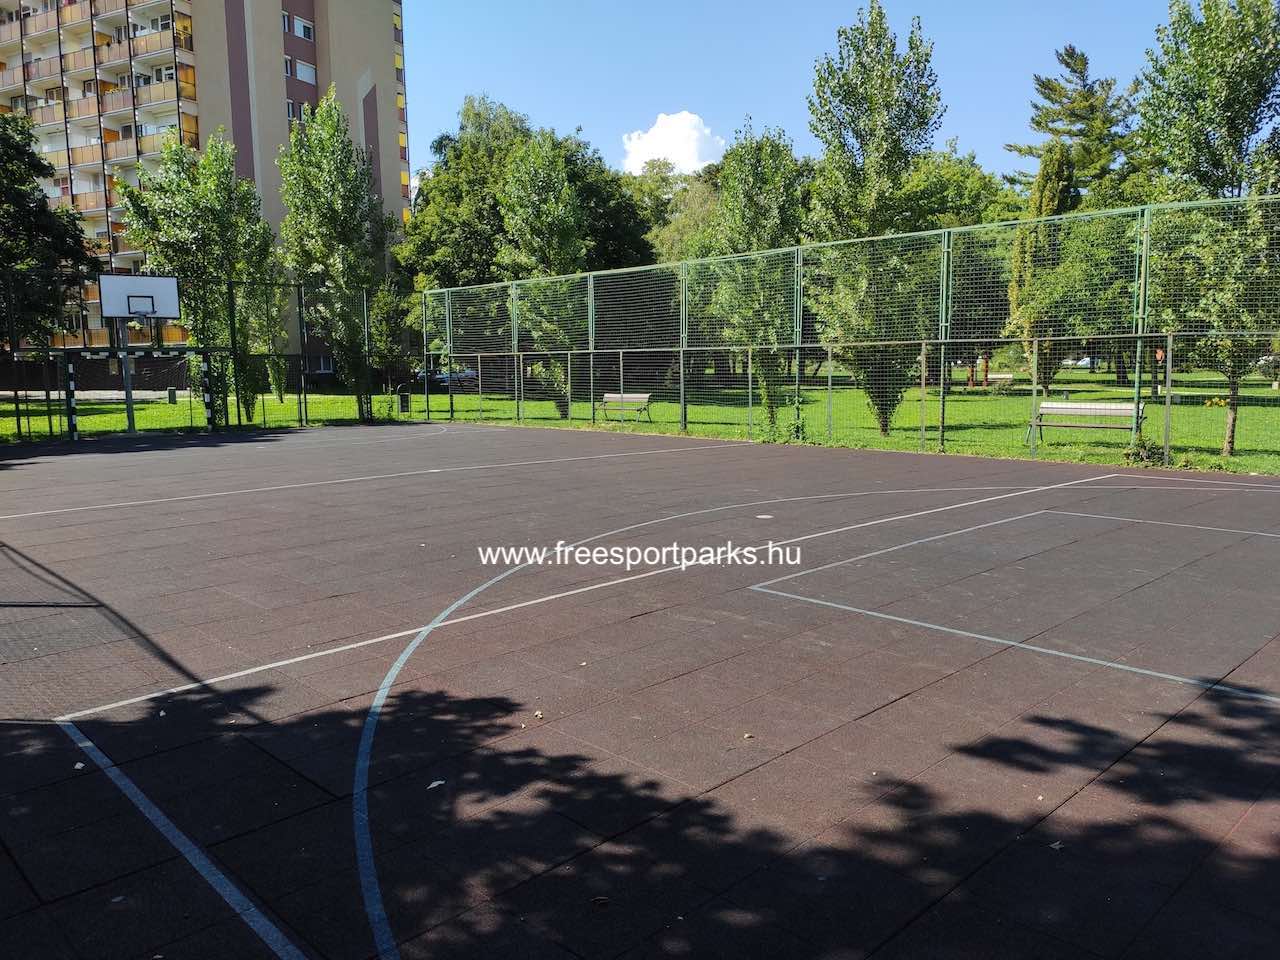 gumiburkolat a felfestett pályavonalakkal - Vizslapark Zalaegerszeg - Free Sport Parks térkép